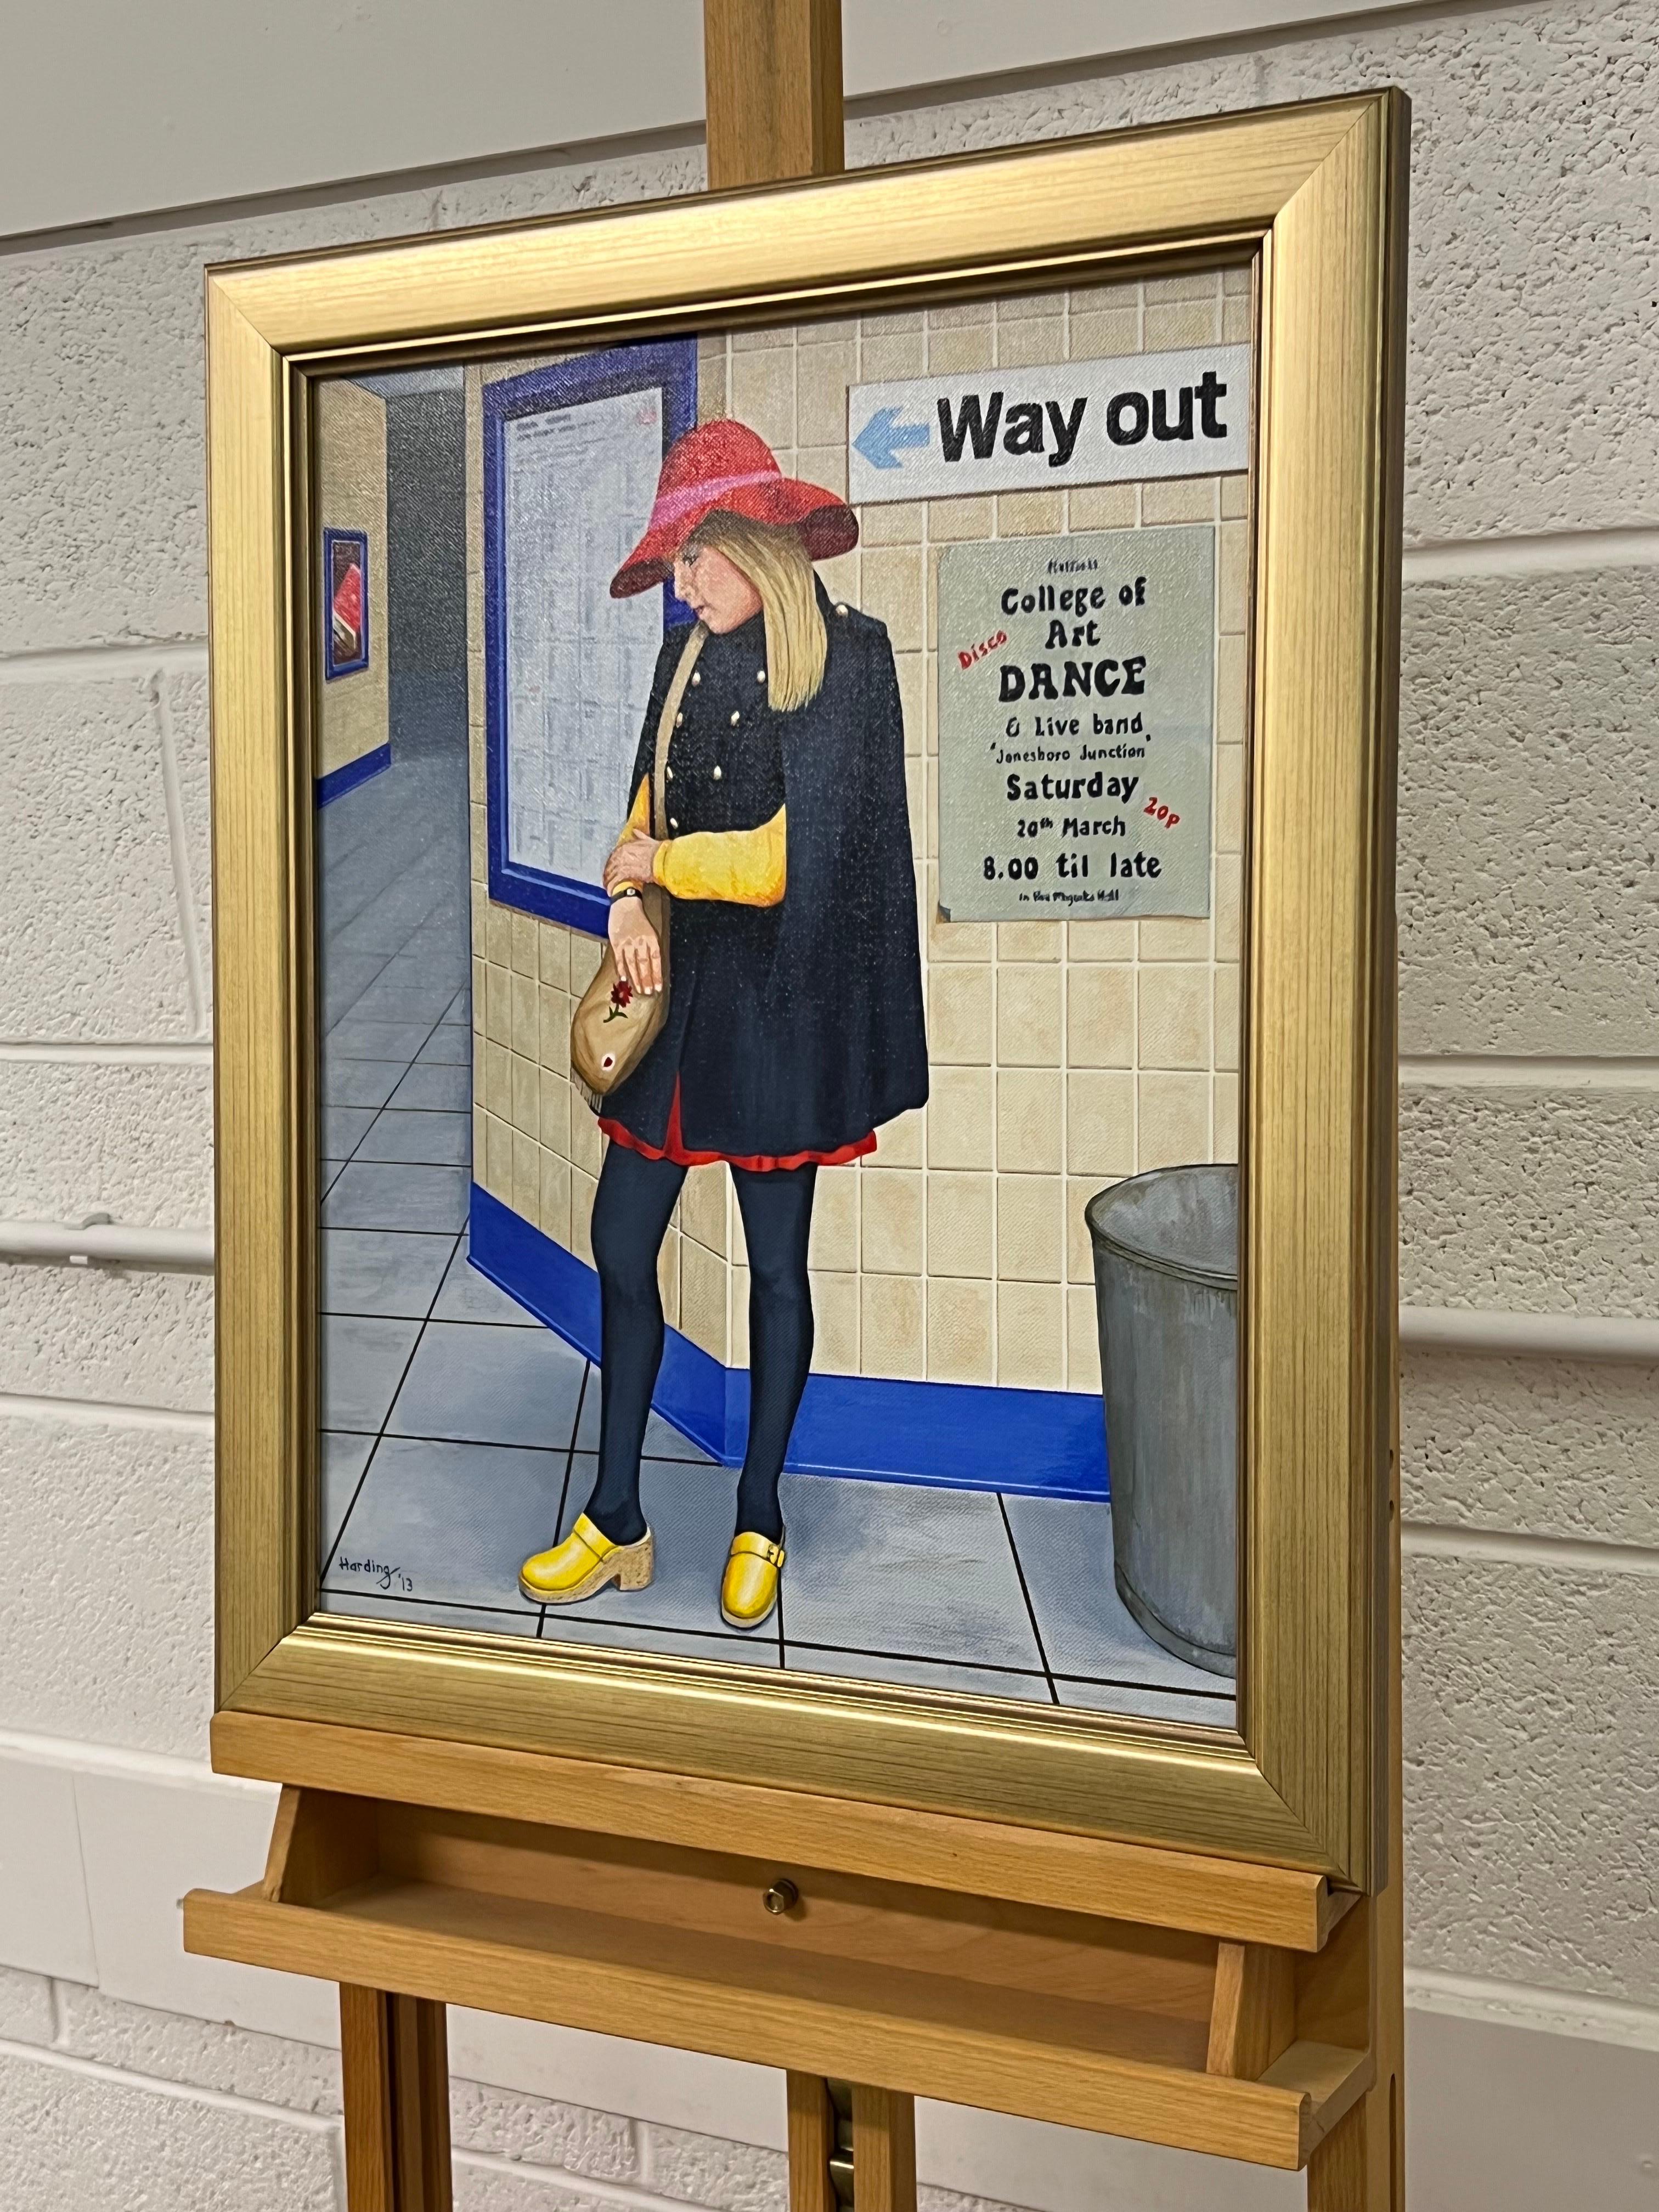 Vintage English Woman waiting at the Train Station 1960's 1970's England von Retro Nostalgic Artist, Paul F Harding. Signiert, Original, Öl auf Leinwand. Präsentiert in einem goldenen Rahmen. 

Kunst misst 16 x 20 Zoll 
Rahmen misst 21 x 25 Zoll